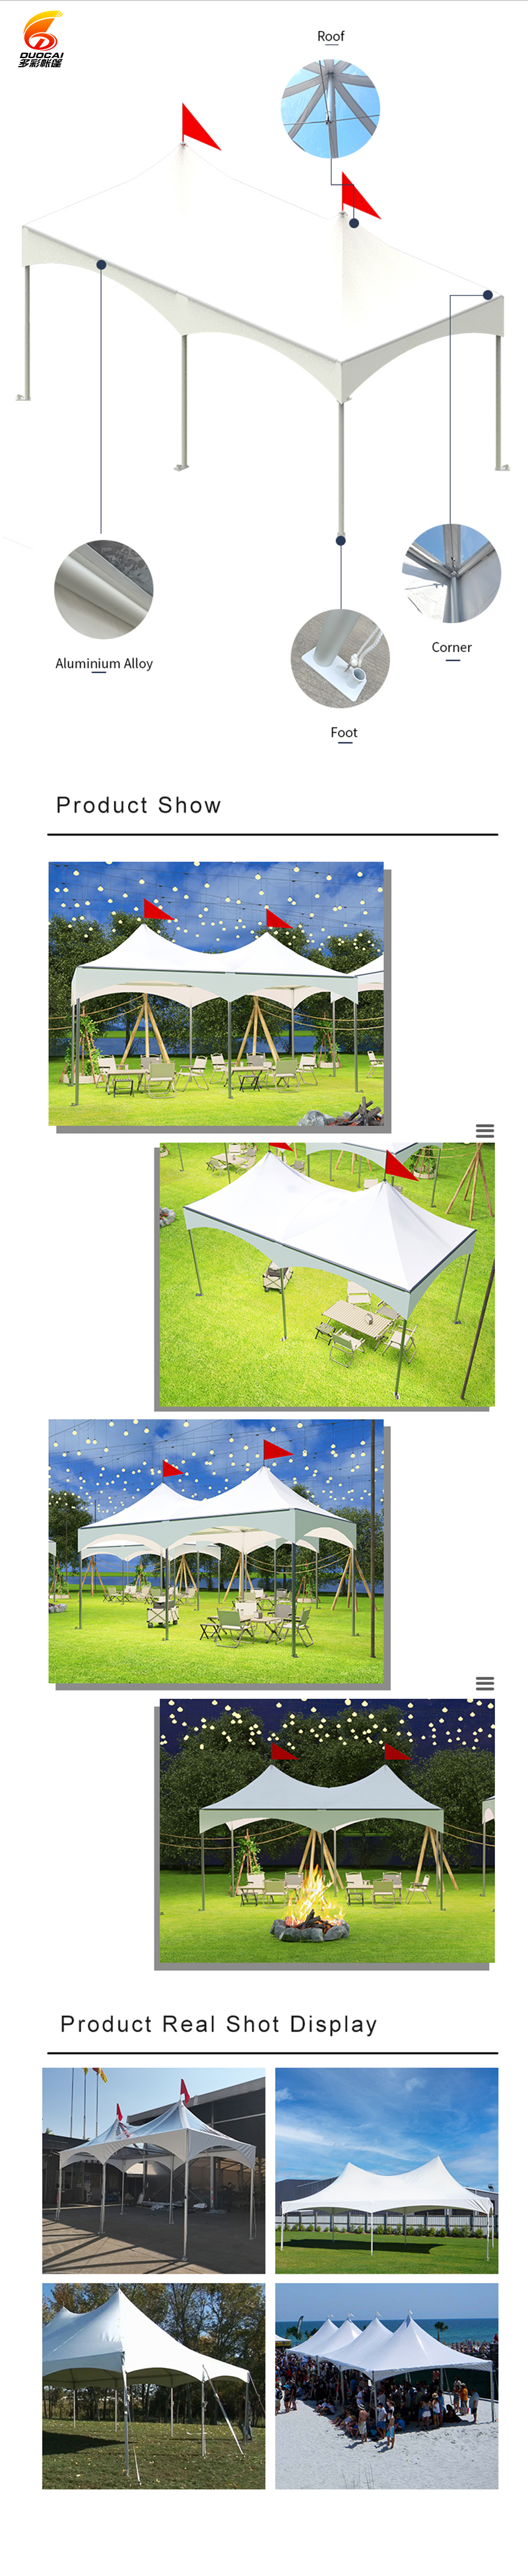 Peak high-capacity wedding outdoor activities double peak tent